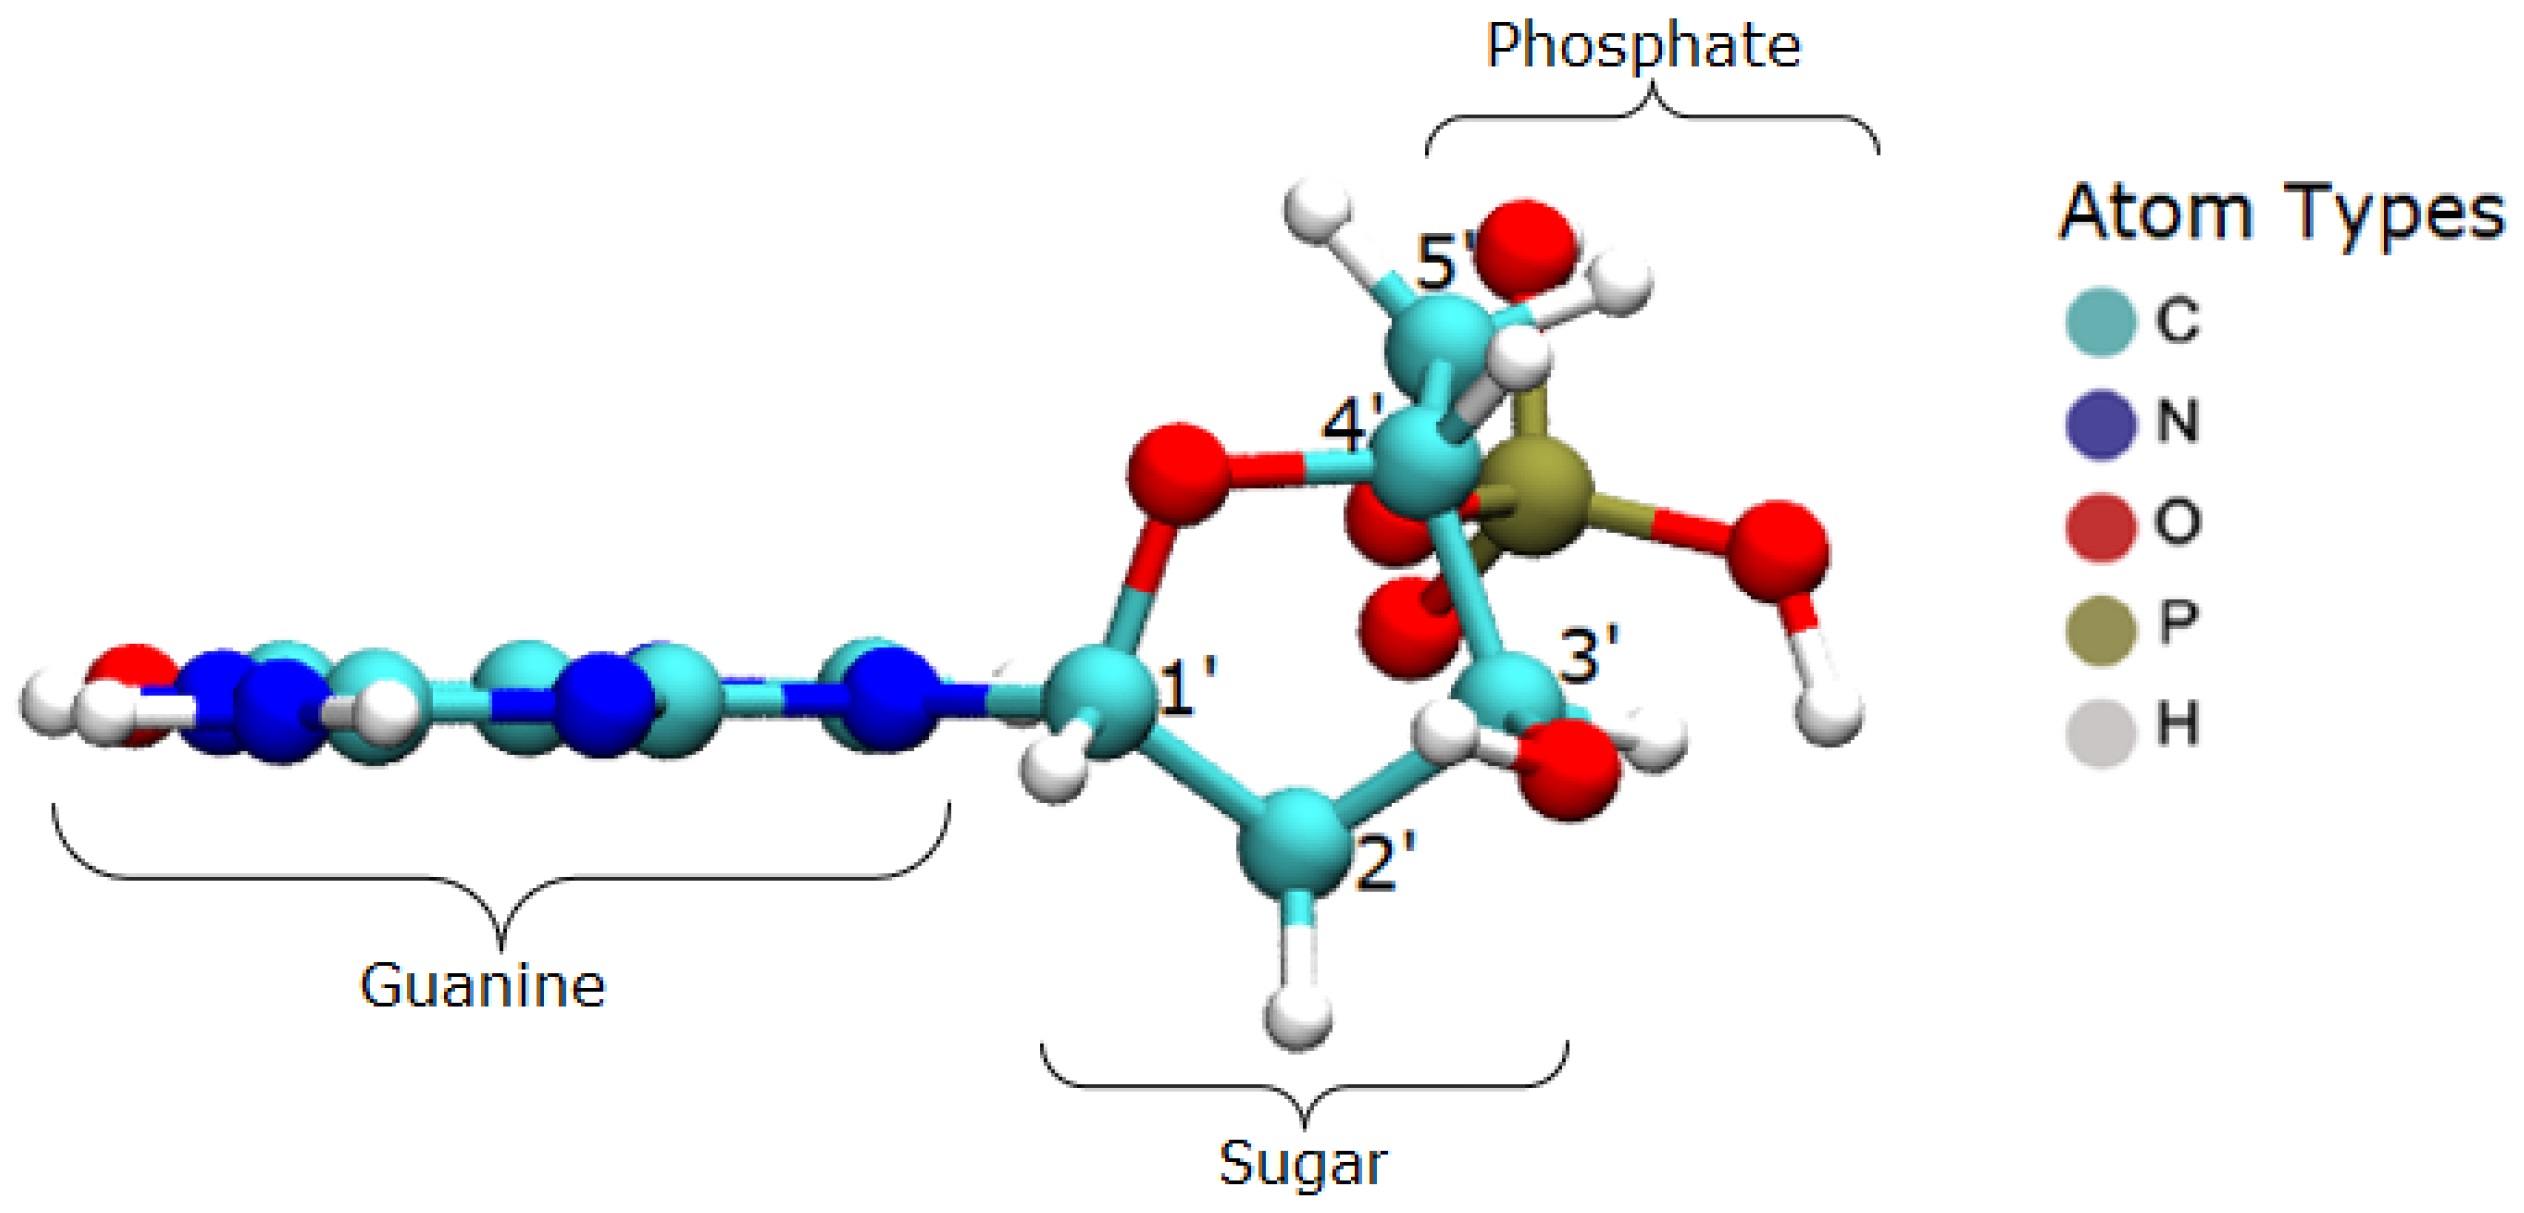 O radical hidroxila causa a dissociação da guanina, uma das bases nitrogenadas que formam os nucleotídeos constituintes das moléculas de DNA